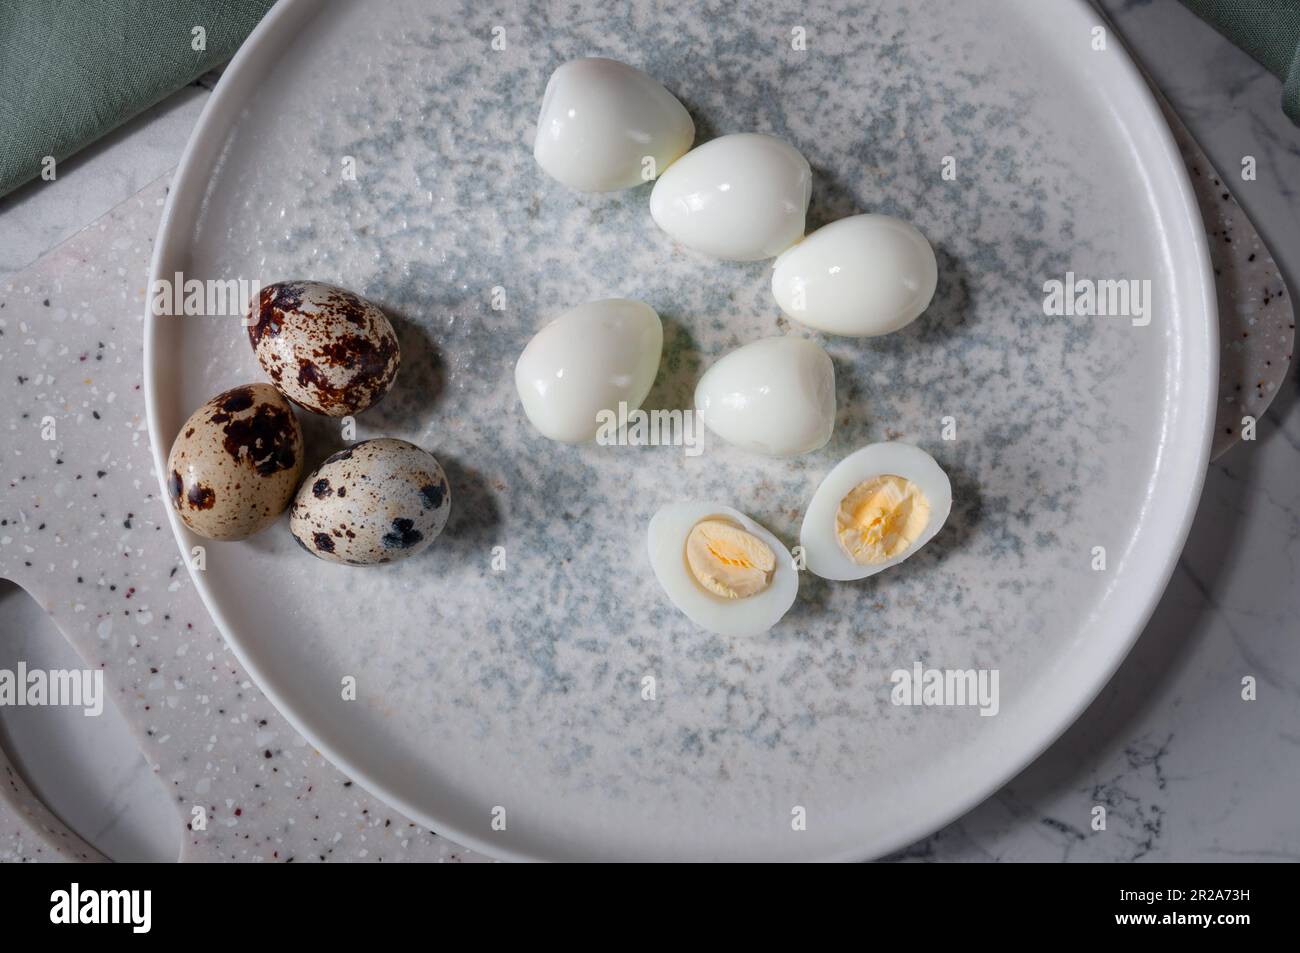 Die gekochten Eier liegen auf dem Teller, auf dem Brett. Nützliche und leckere Zutat. Stockfoto